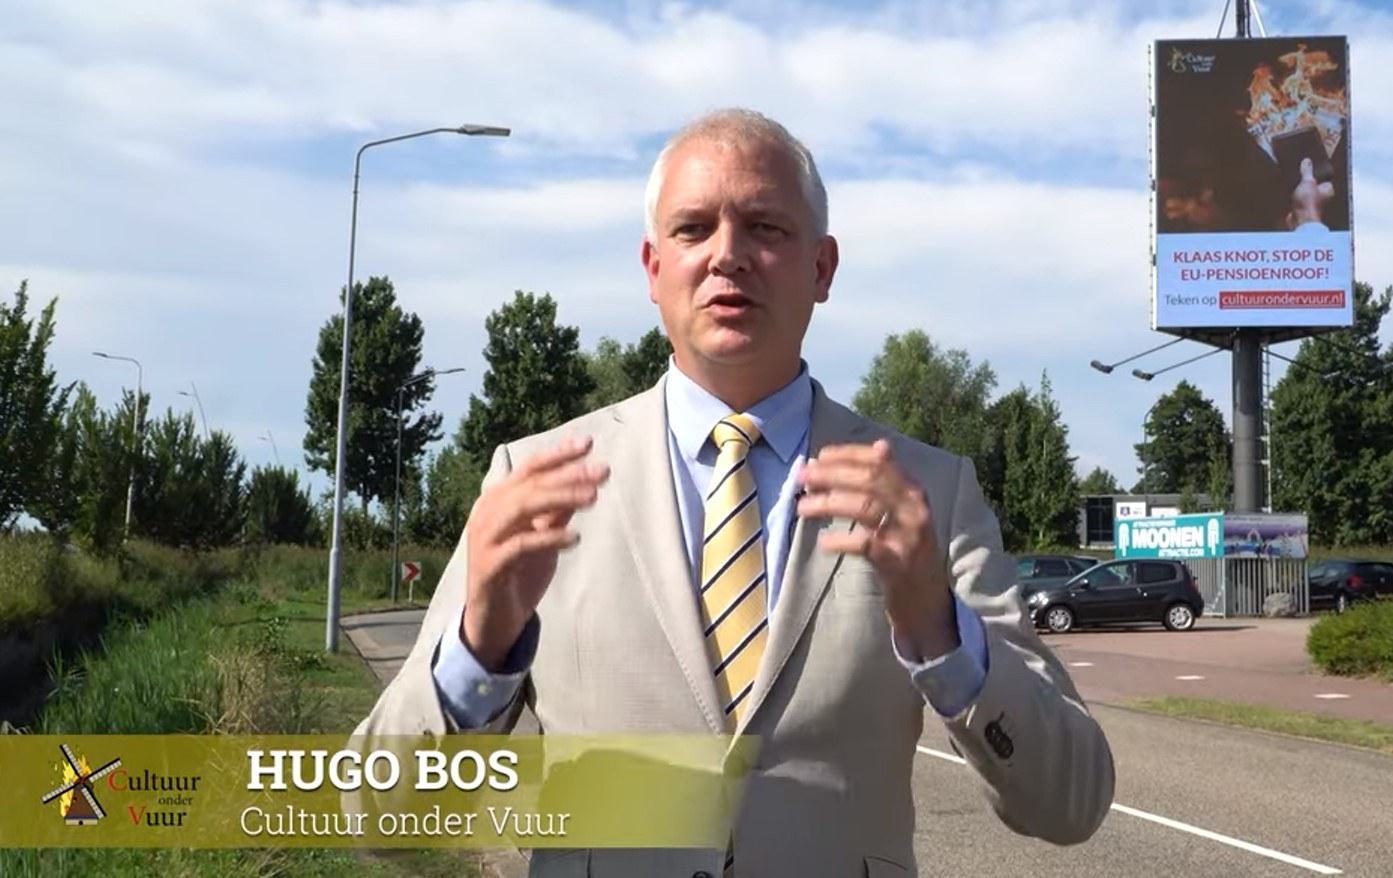 Video: Billboard roept Klaas Knot op: "Stop de EU-pensioenroof!"